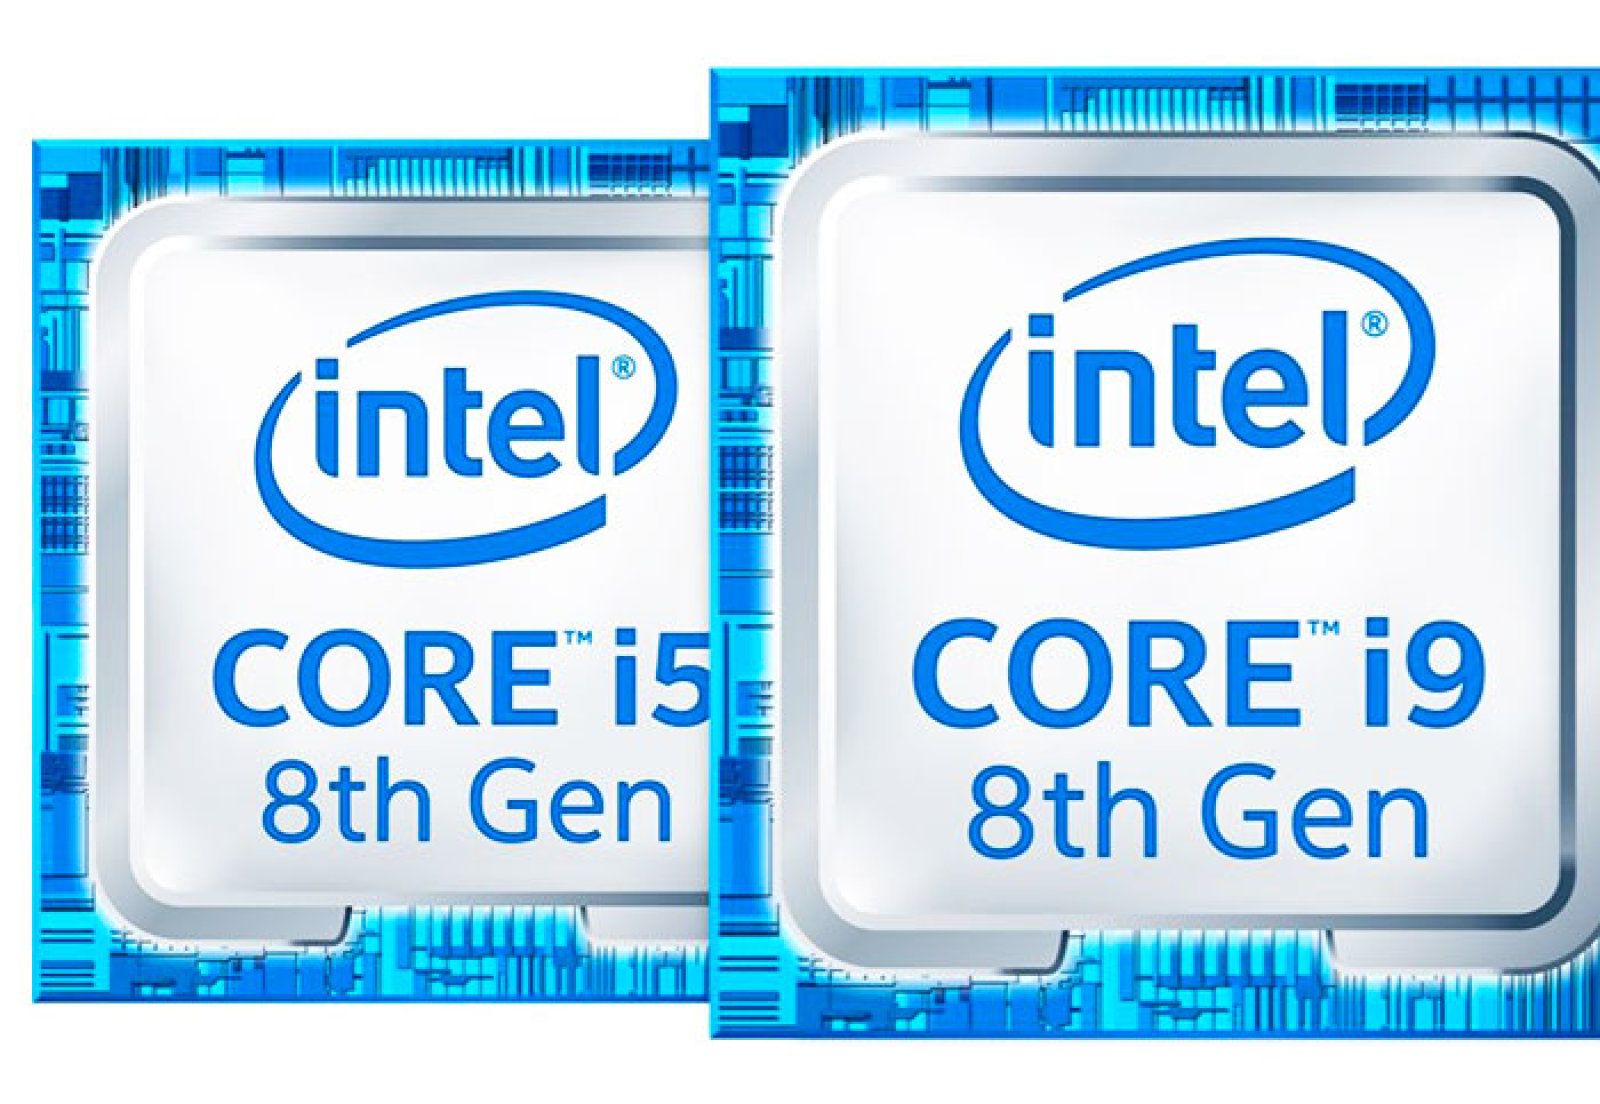 Intel com. Фирмы производящие процессоры. Производители процессоров. Intel про компанию и процессор. Фирмы производители процессоров.